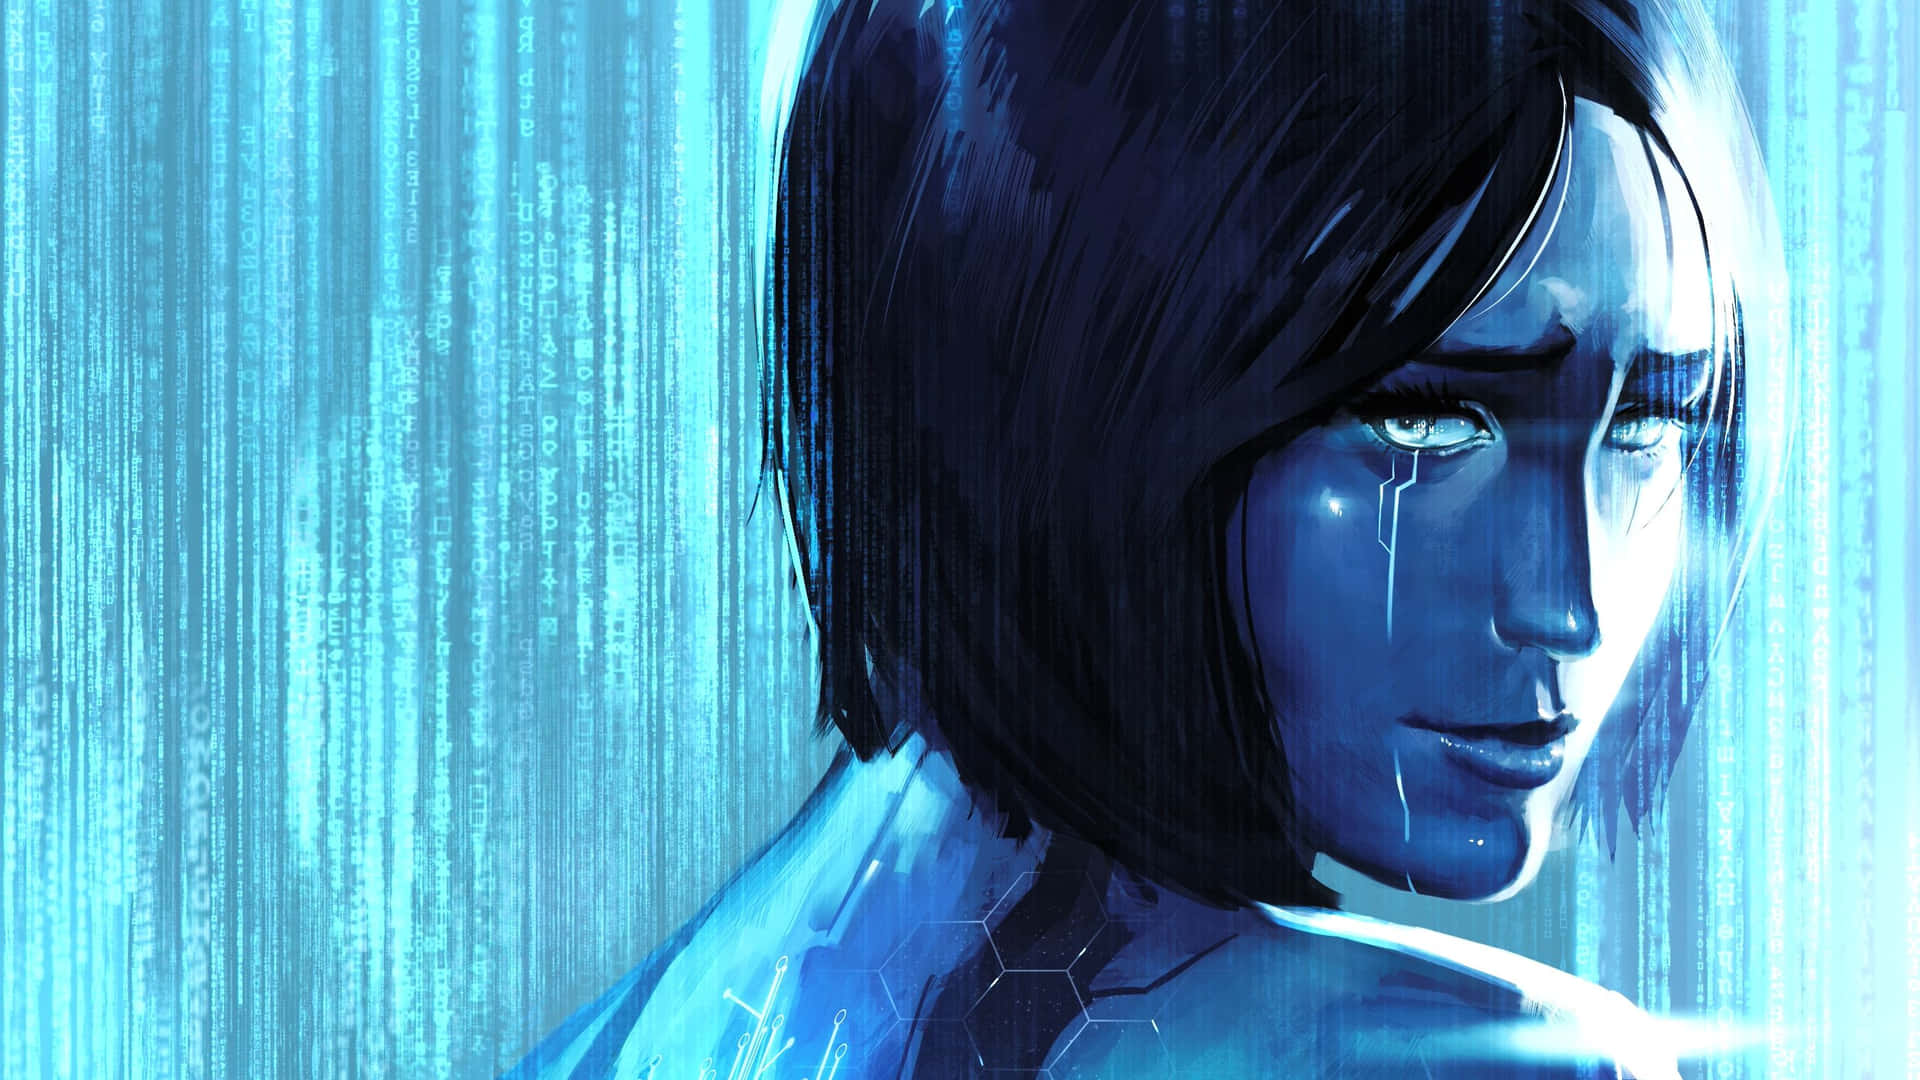 Halo Cortana in an immersive digital world Wallpaper